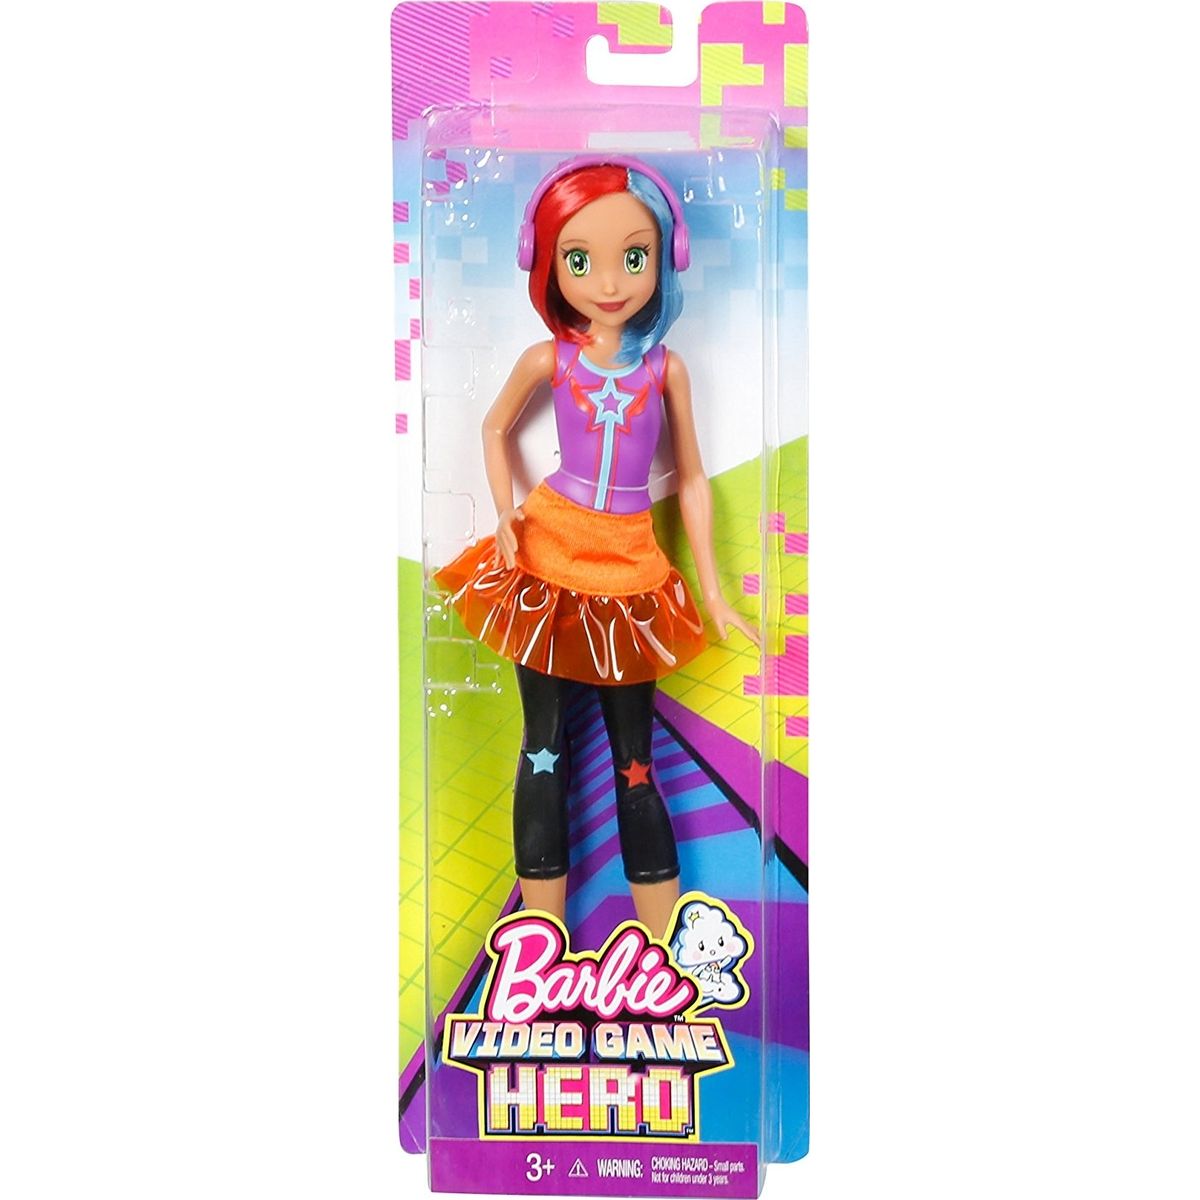 Видео игра куклы. Barbie Video game Hero. Барби виртуальный мир в пиксельном виде. Фигурка Barbie виртуальный герой.